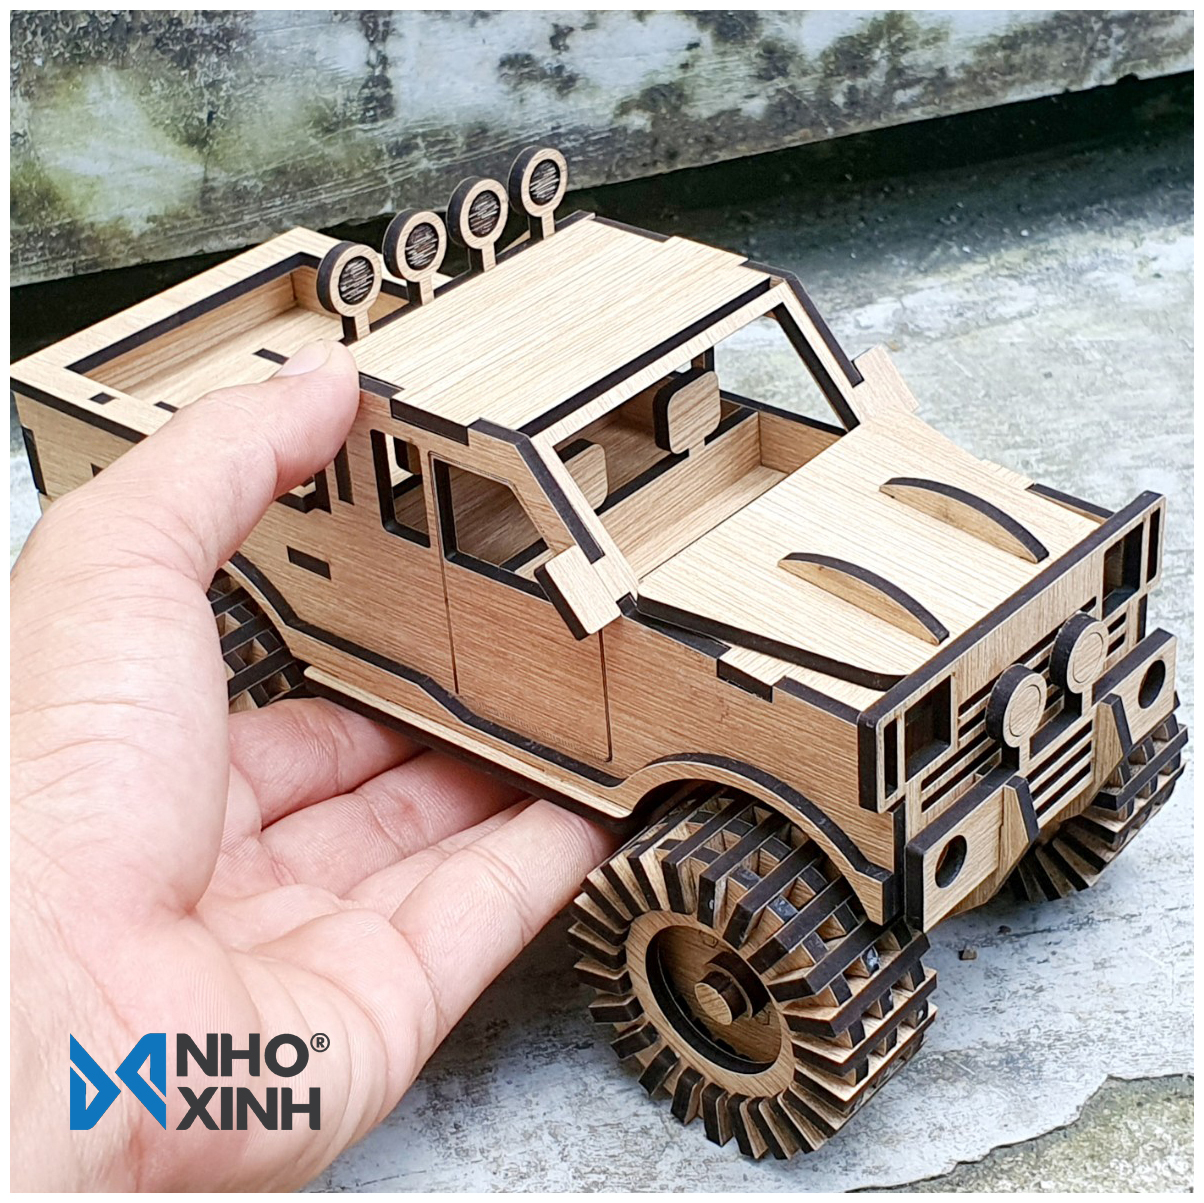 Mô hình gỗ xe Hummer - xế khủng địa hình, Nhãn hiệu Nhỏ &amp; Xinh, xuất xứ Việt Nam, trang trí không gian làm việc, không gian giải trí, thích hợp làm quà tặng, quà lưu niệm cho bạn bè và trẻ em